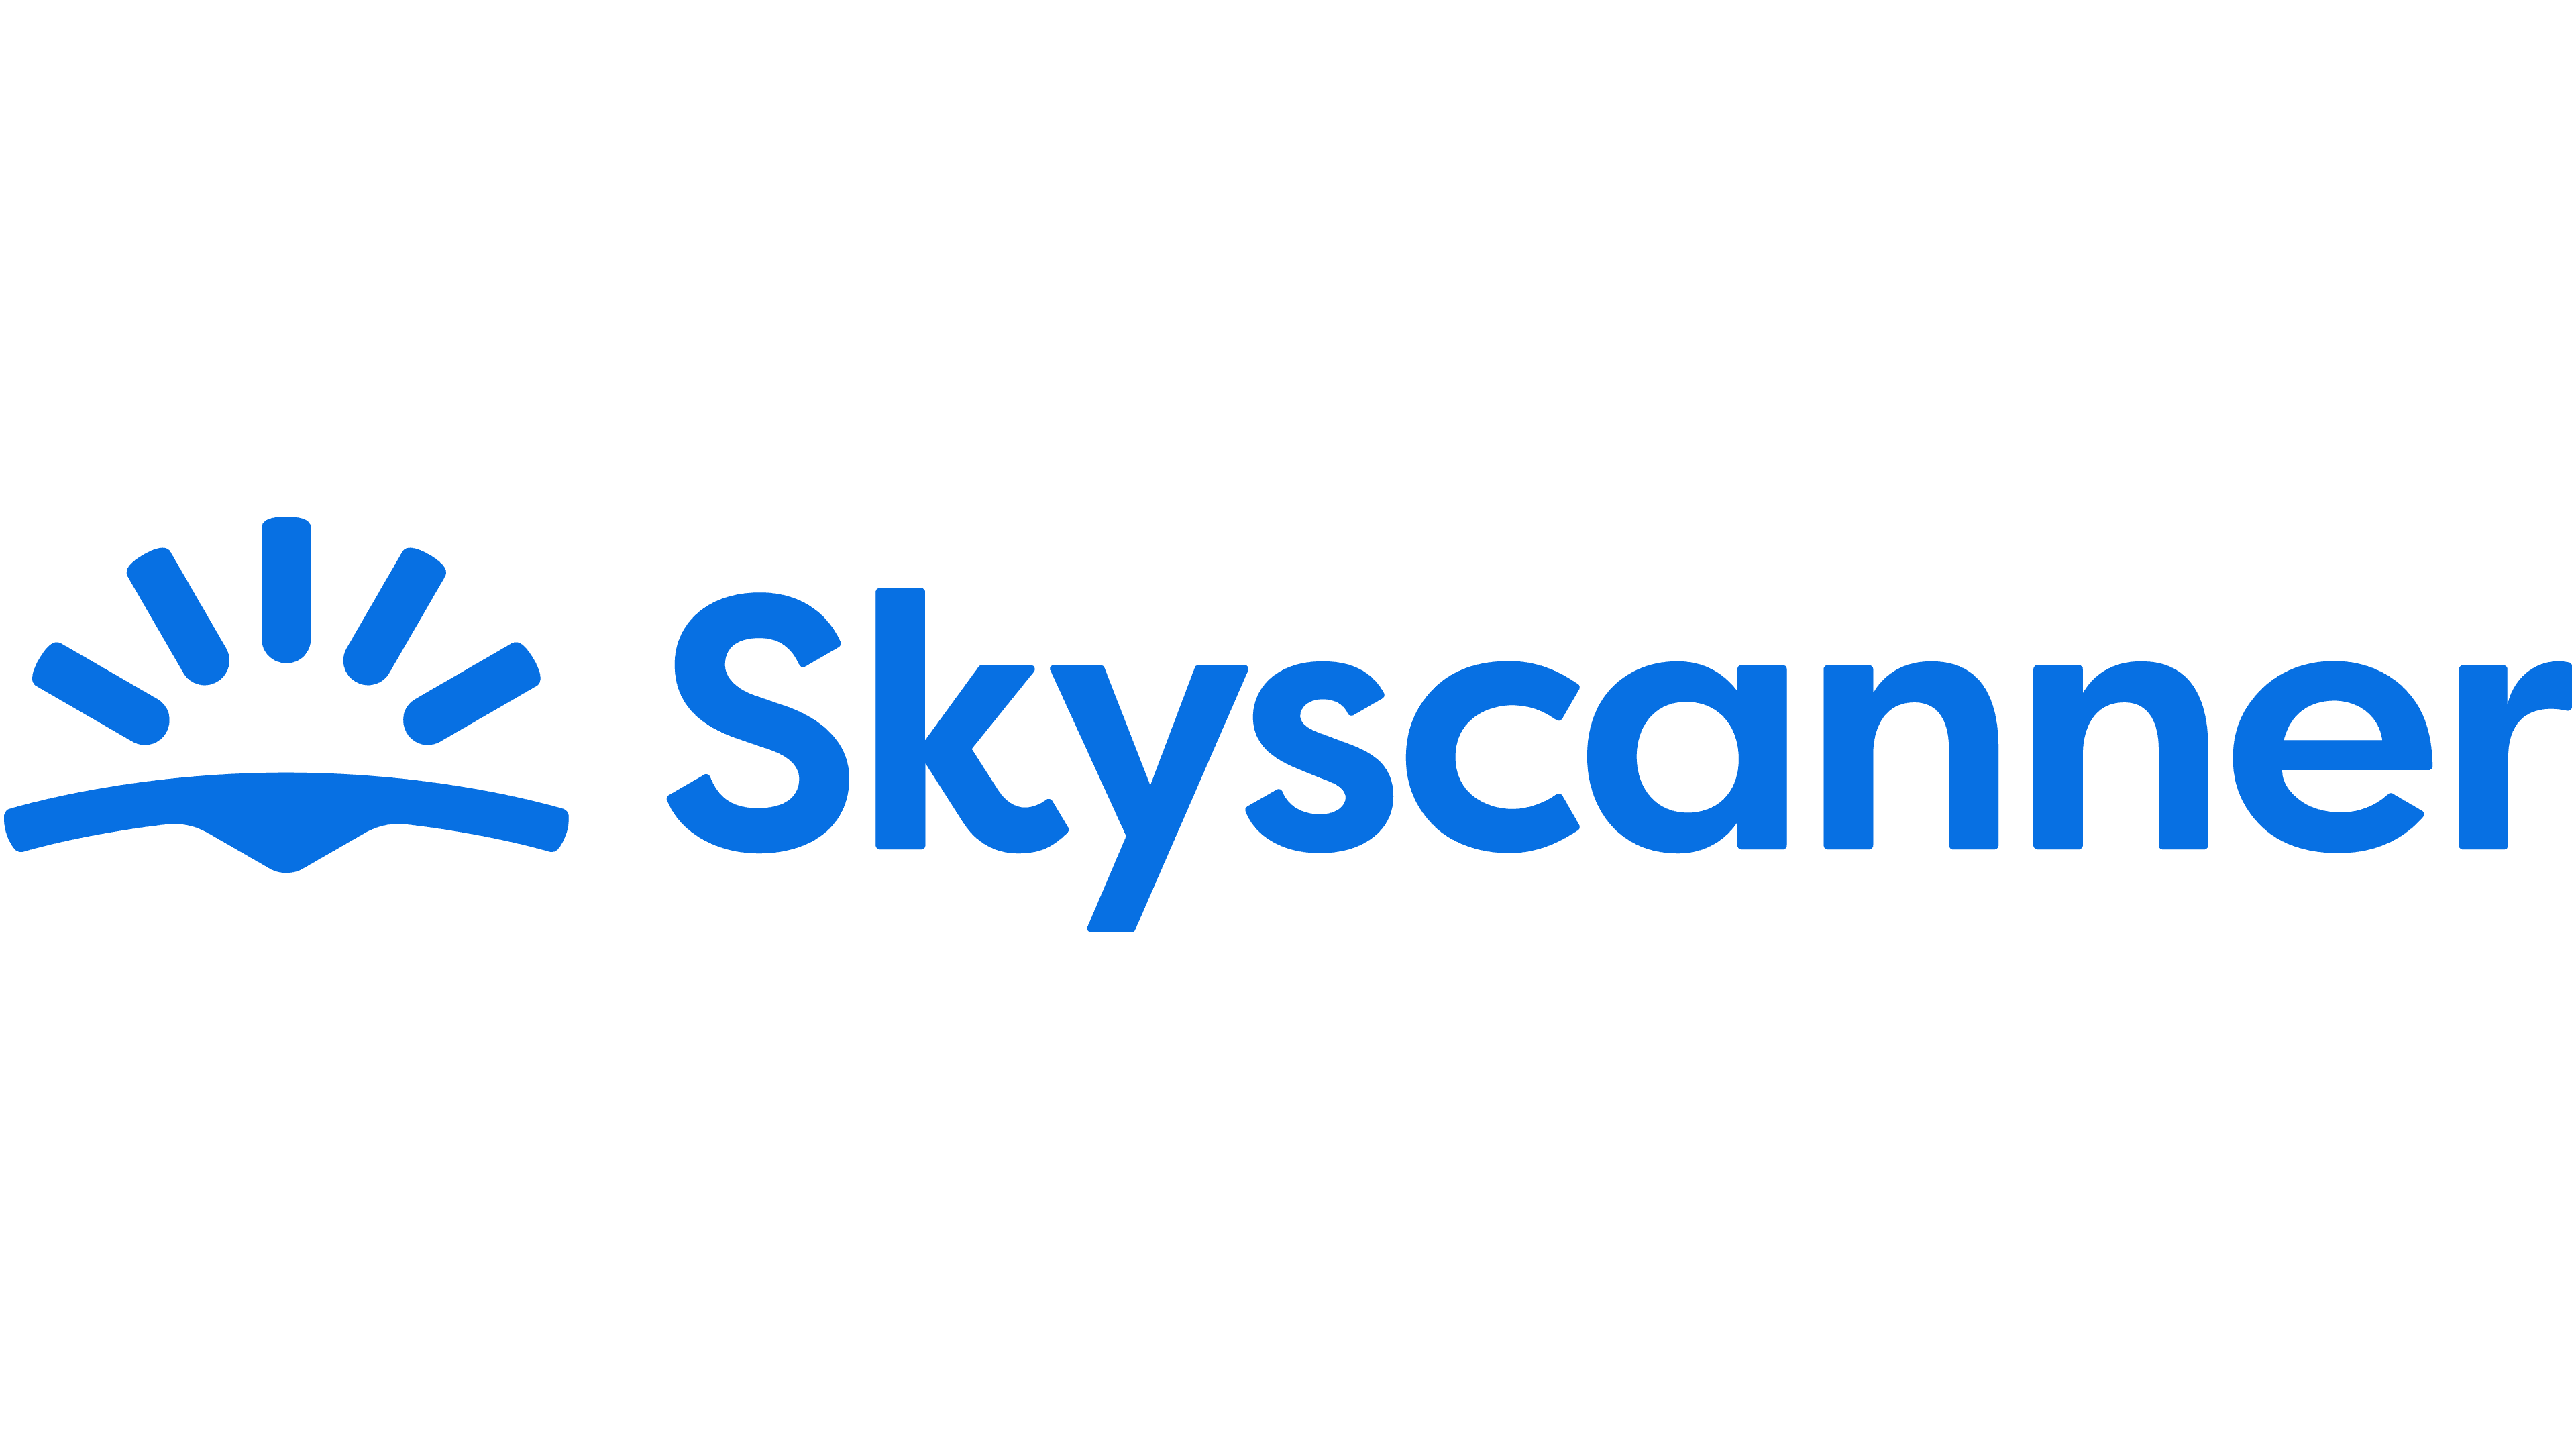 logotipo do skyscanner